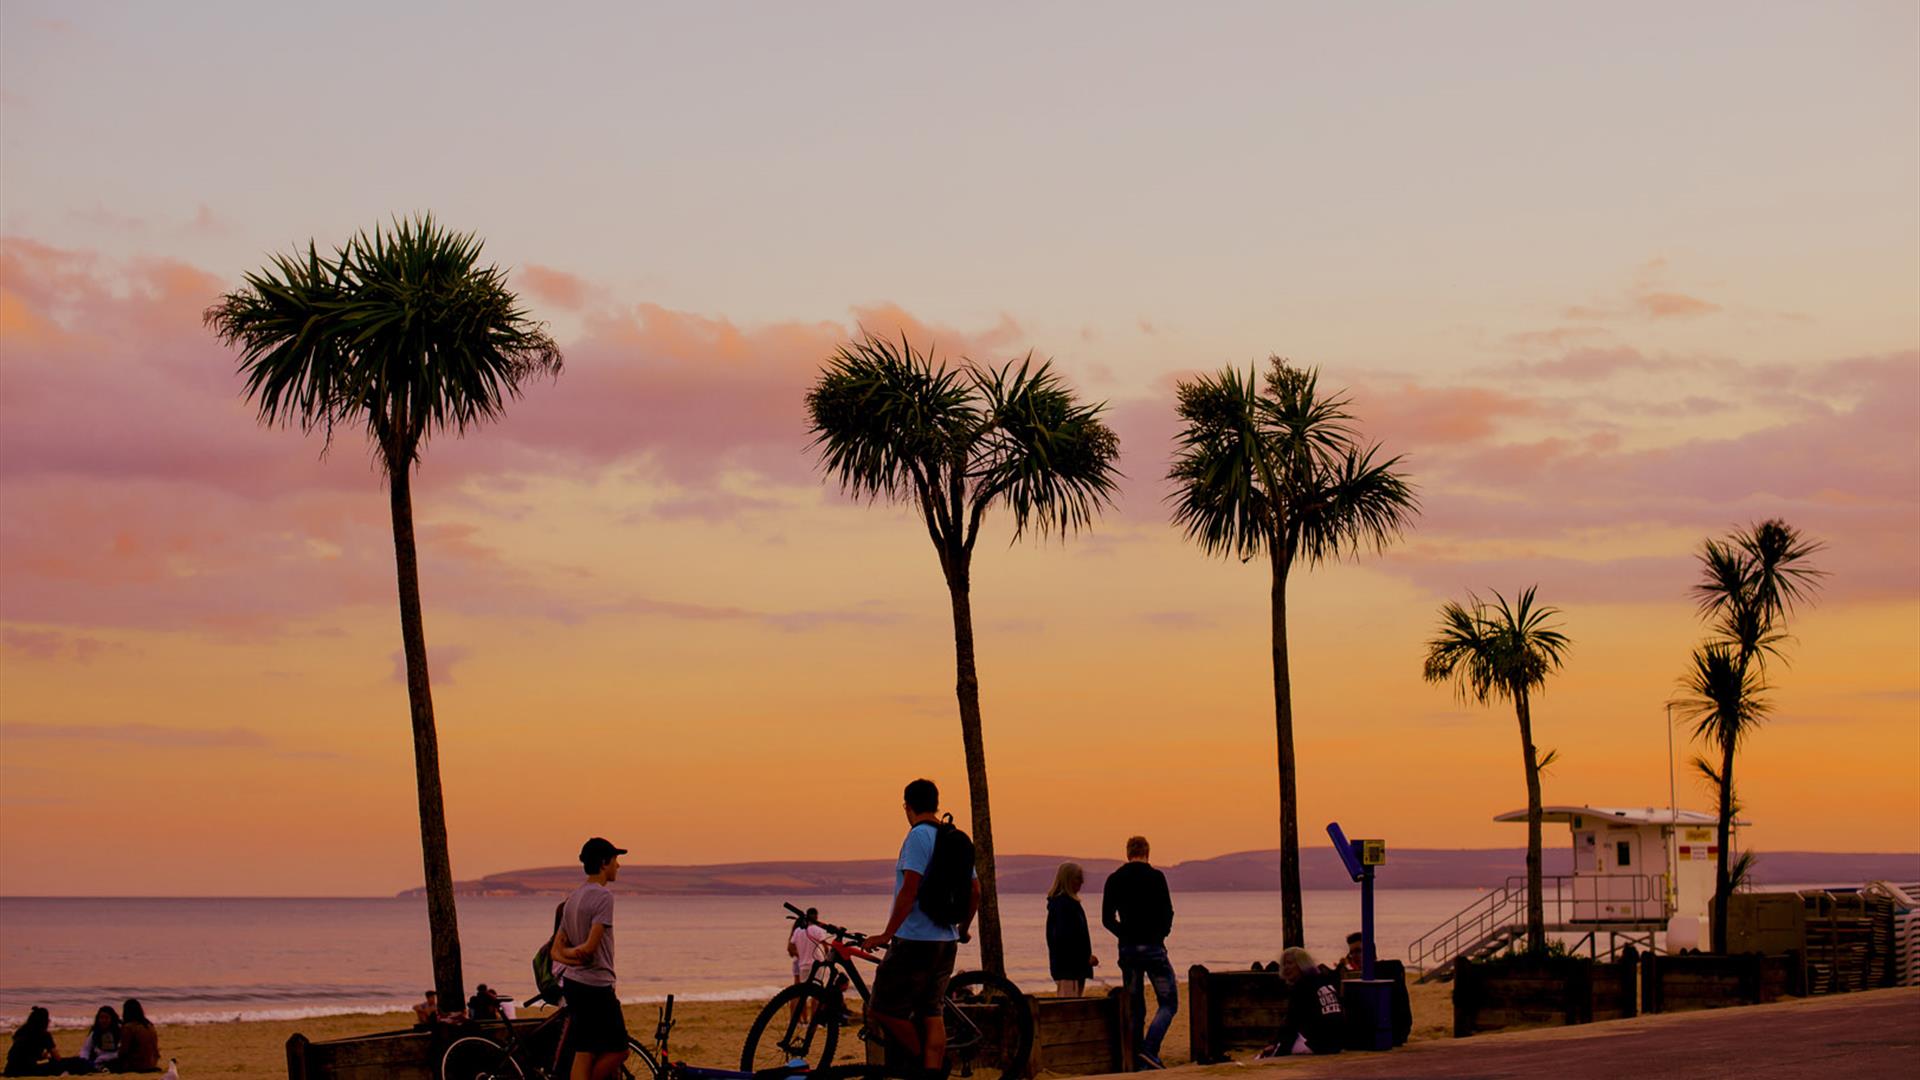 Palm Trees with Orange sunset along Bournemouth coastline